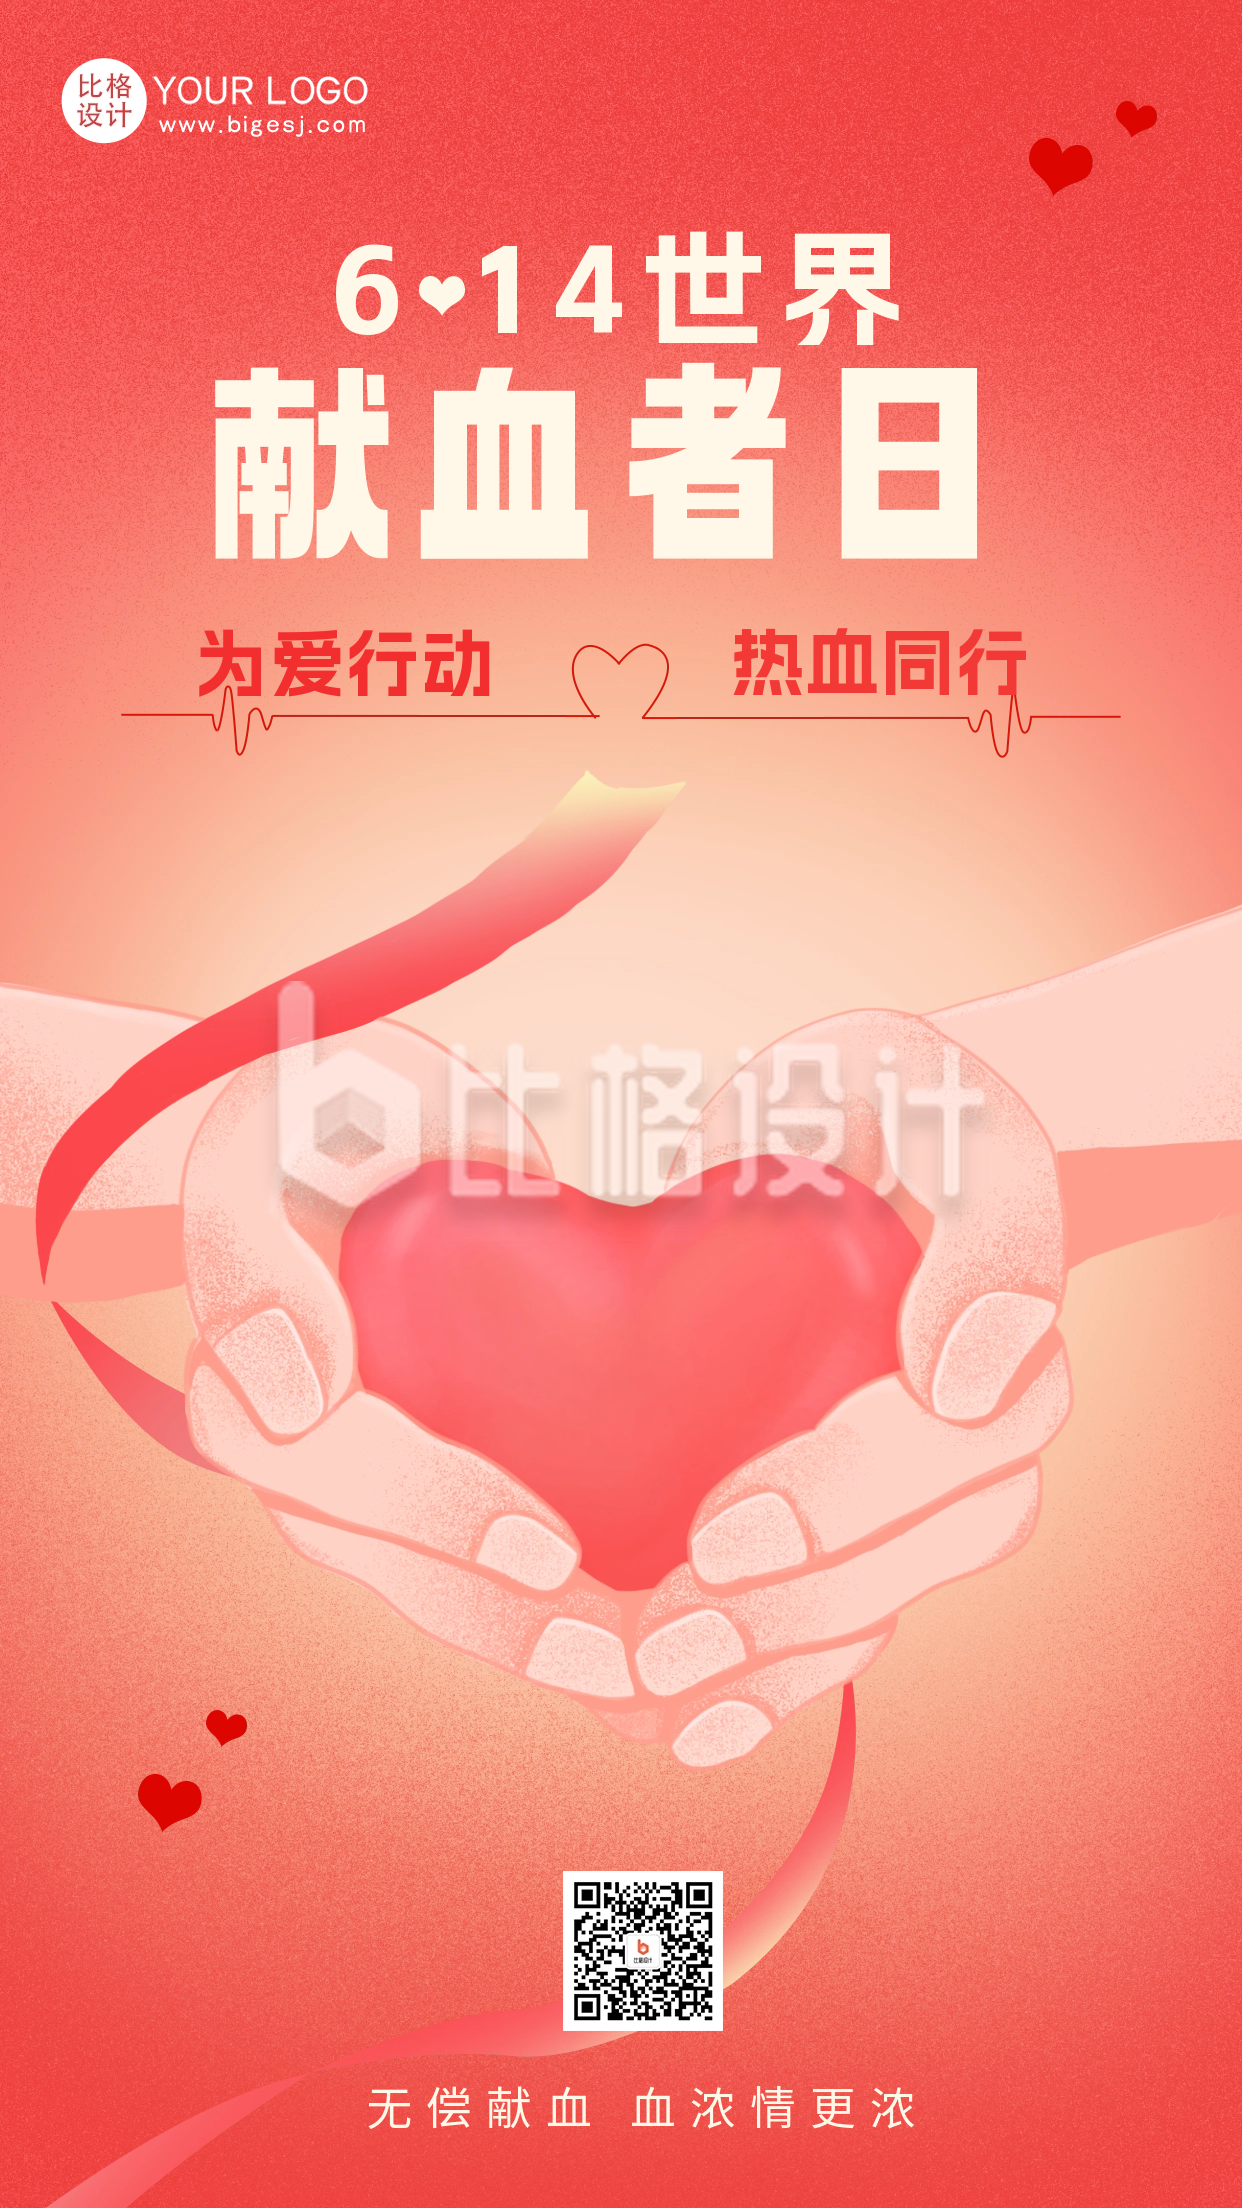 红色简约风献血日宣传手机海报